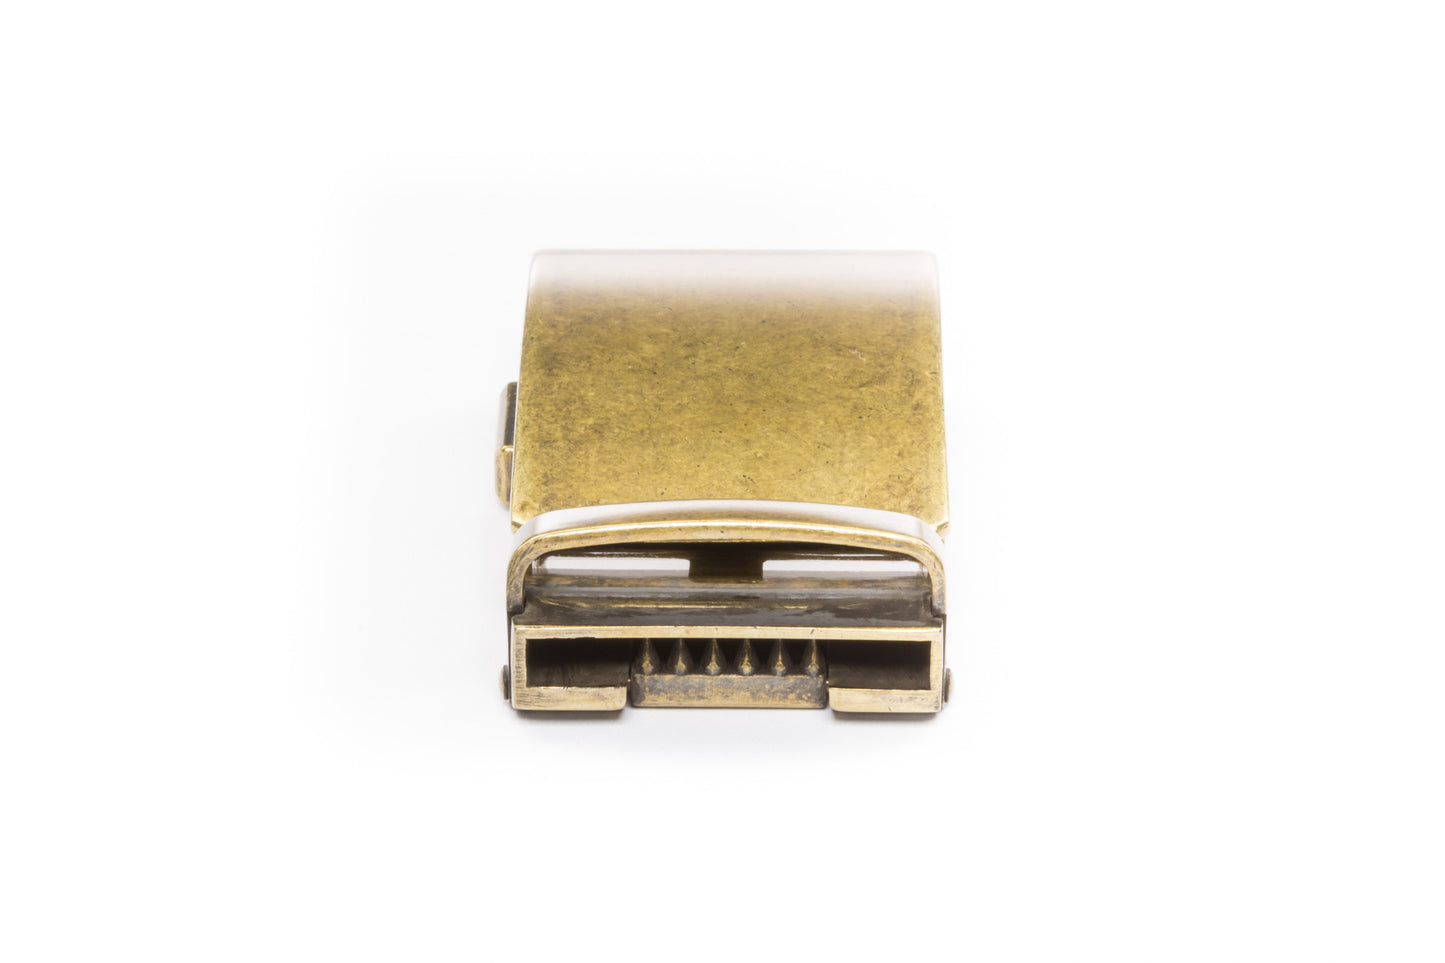 Golf Belt Buckle - Men's Ratchet Belt - Antiqued Gold, 1.5